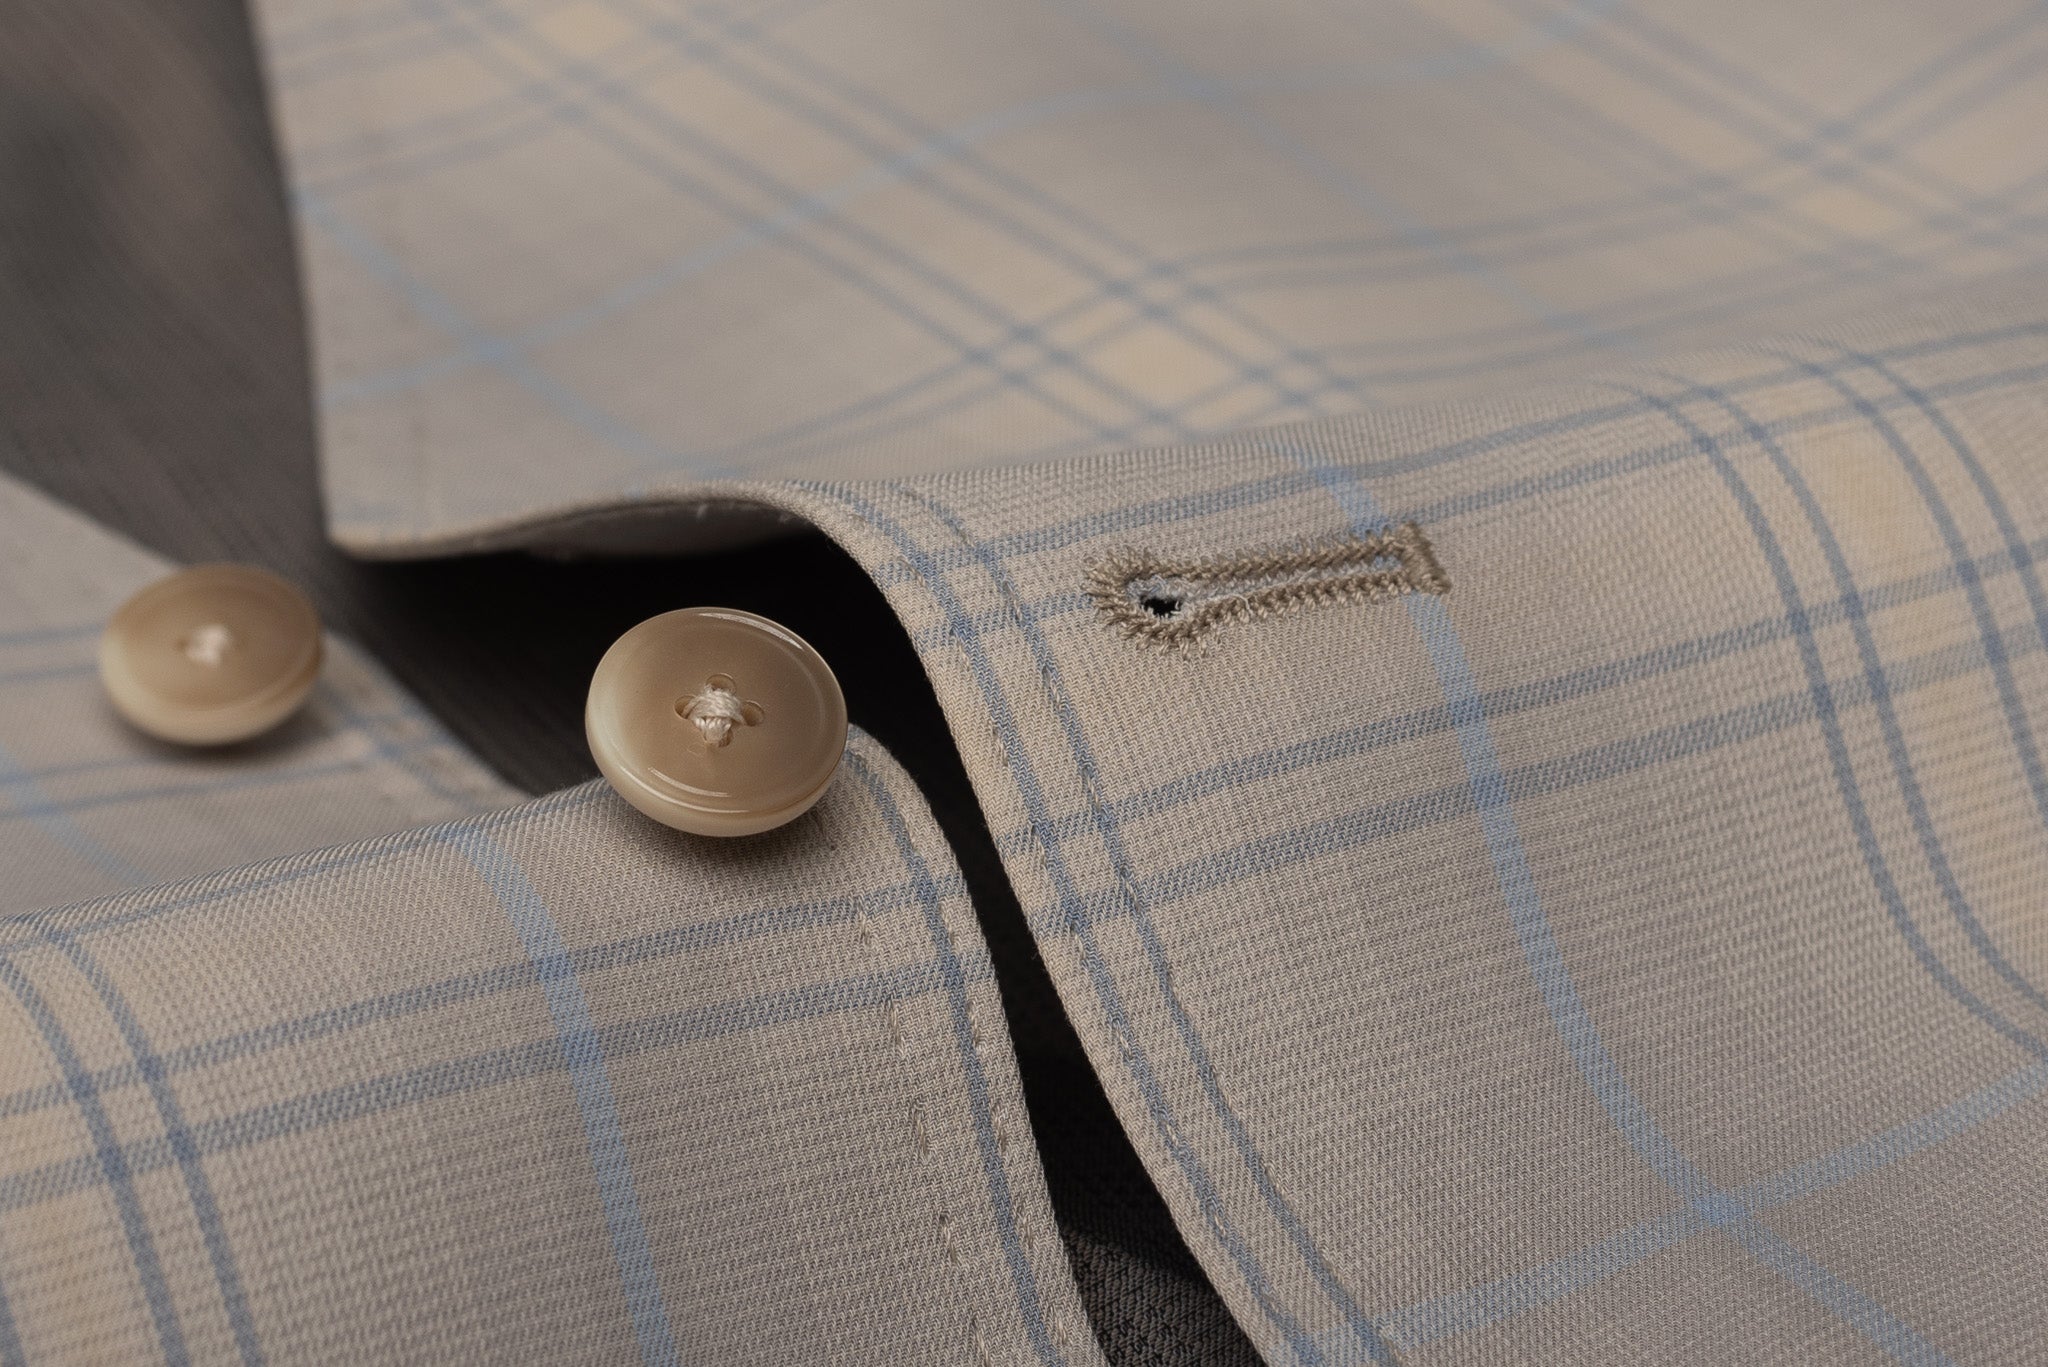 BOGLIOLI Milano Gray Plaid Cotton 4 Button Vest Waistcoat EU 48 NEW US 38 BOGLIOLI